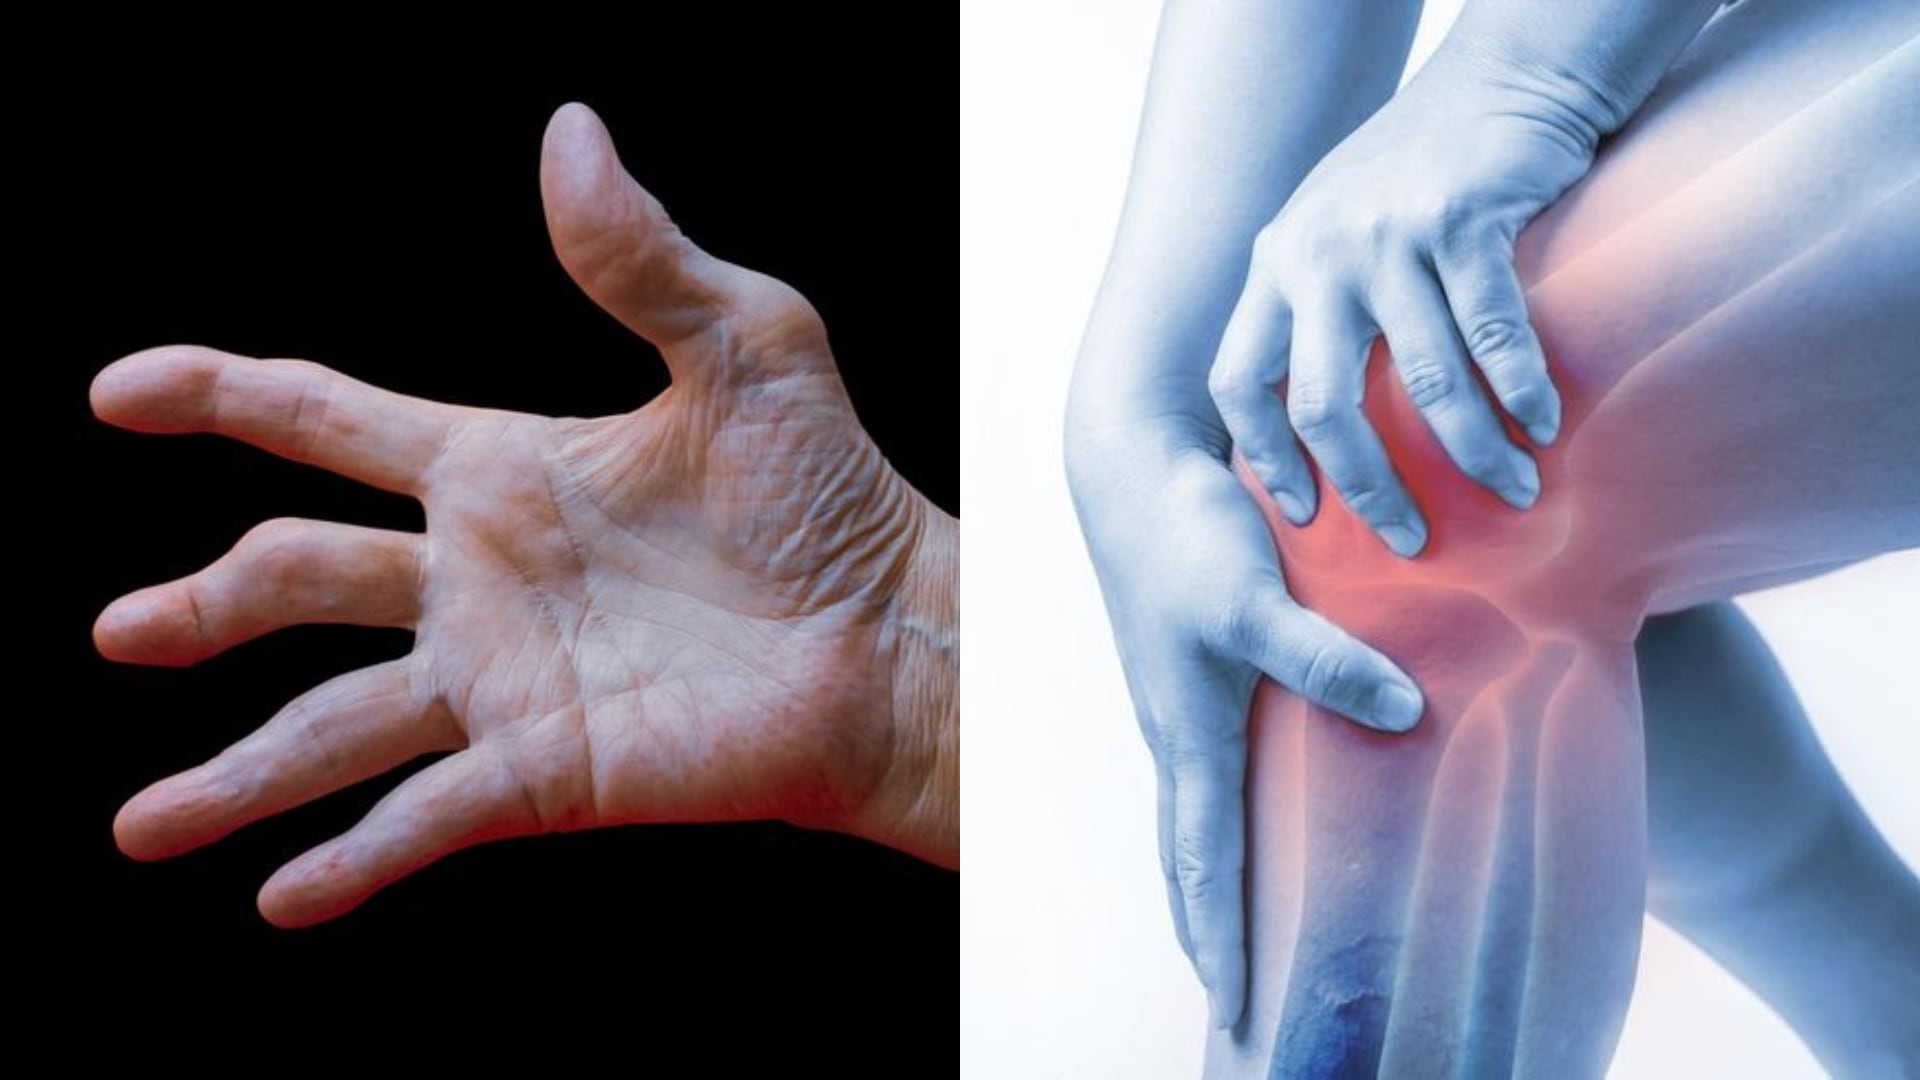 Pacientes con artritis y artrosis suelen experimentar dolor y rigidez en las articulaciones, lo que puede limitar su movilidad y actividades diarias.